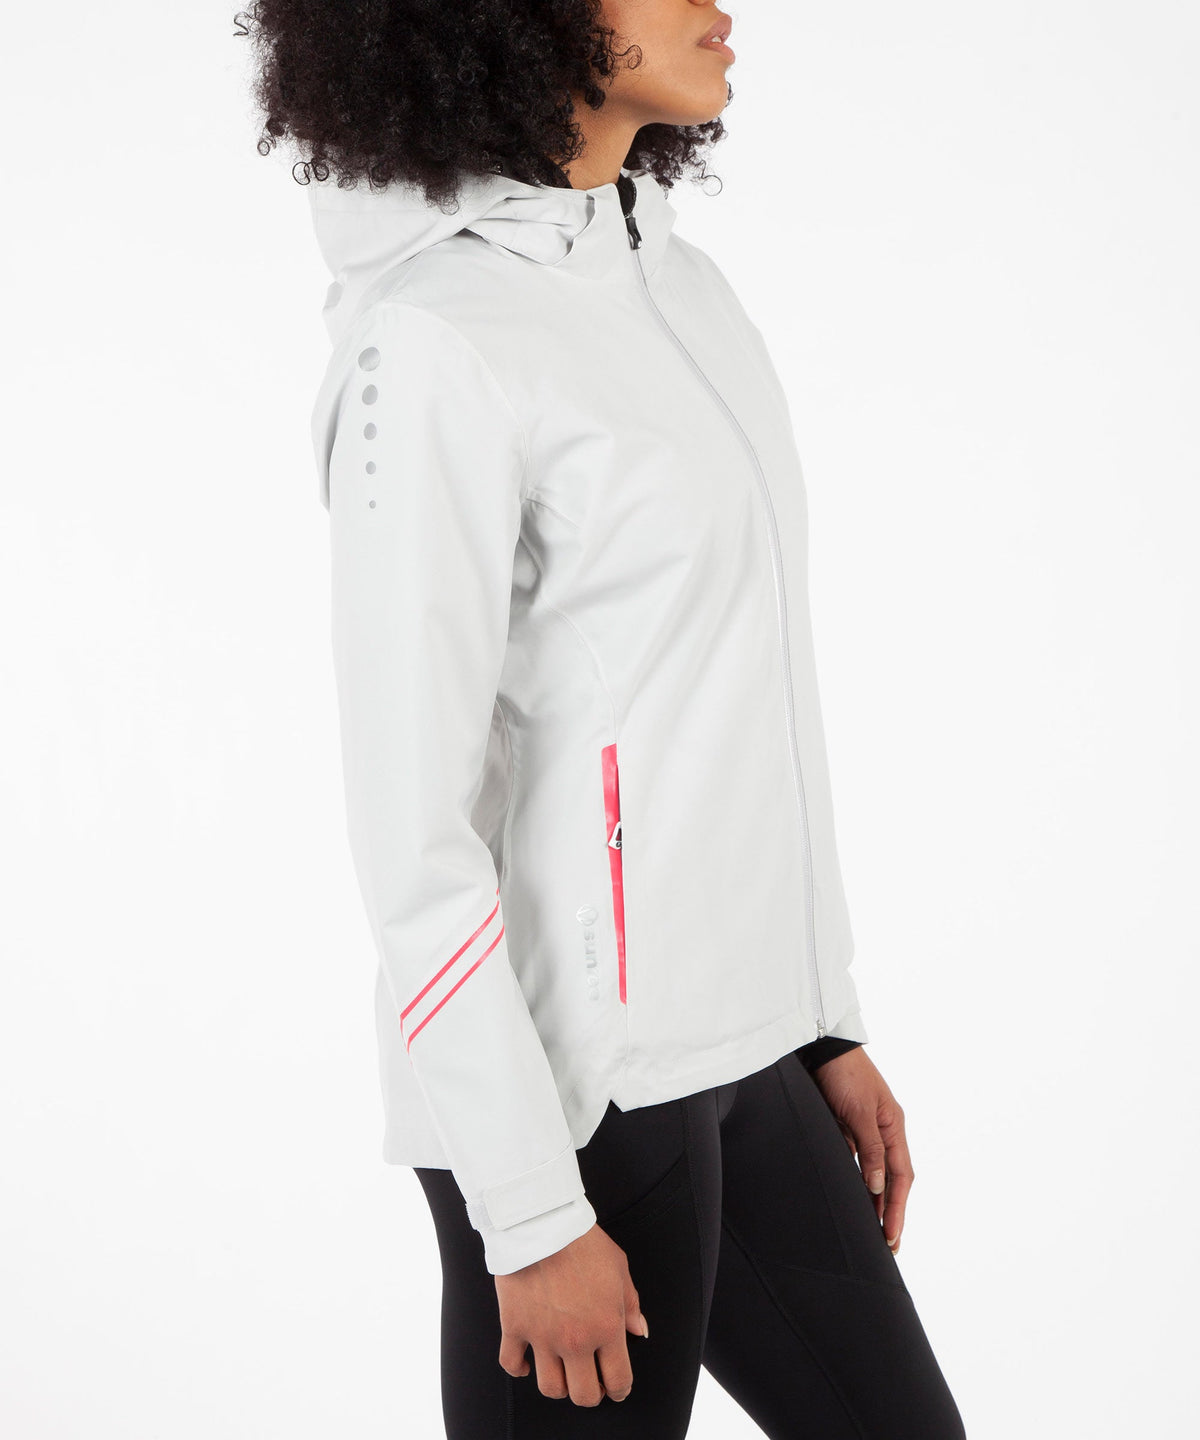 Women's Robin Zephal Z-Tech Waterproof Stretch Jacket - Sunice